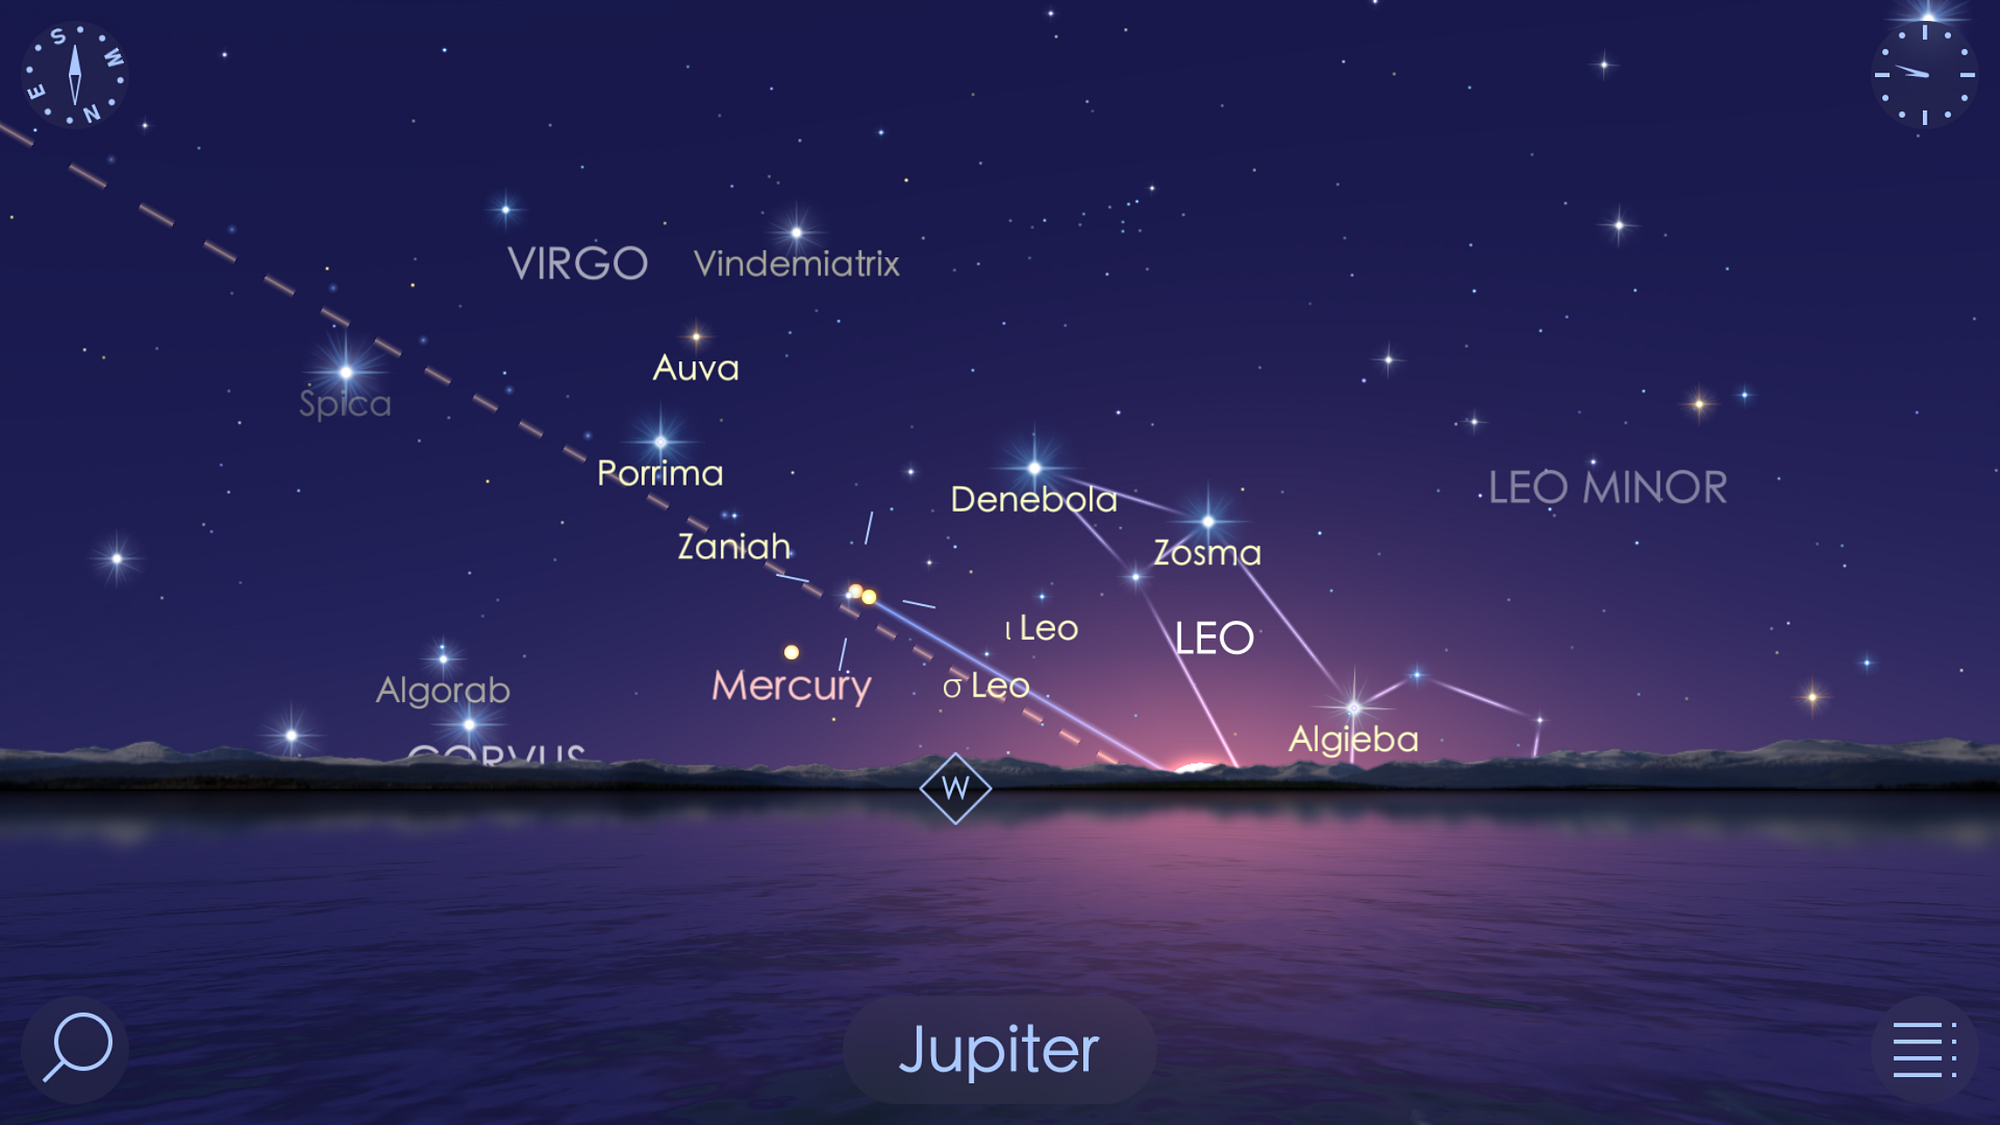 Venus & Jupiter Conjunction on August 27th - Star Walk - Medium